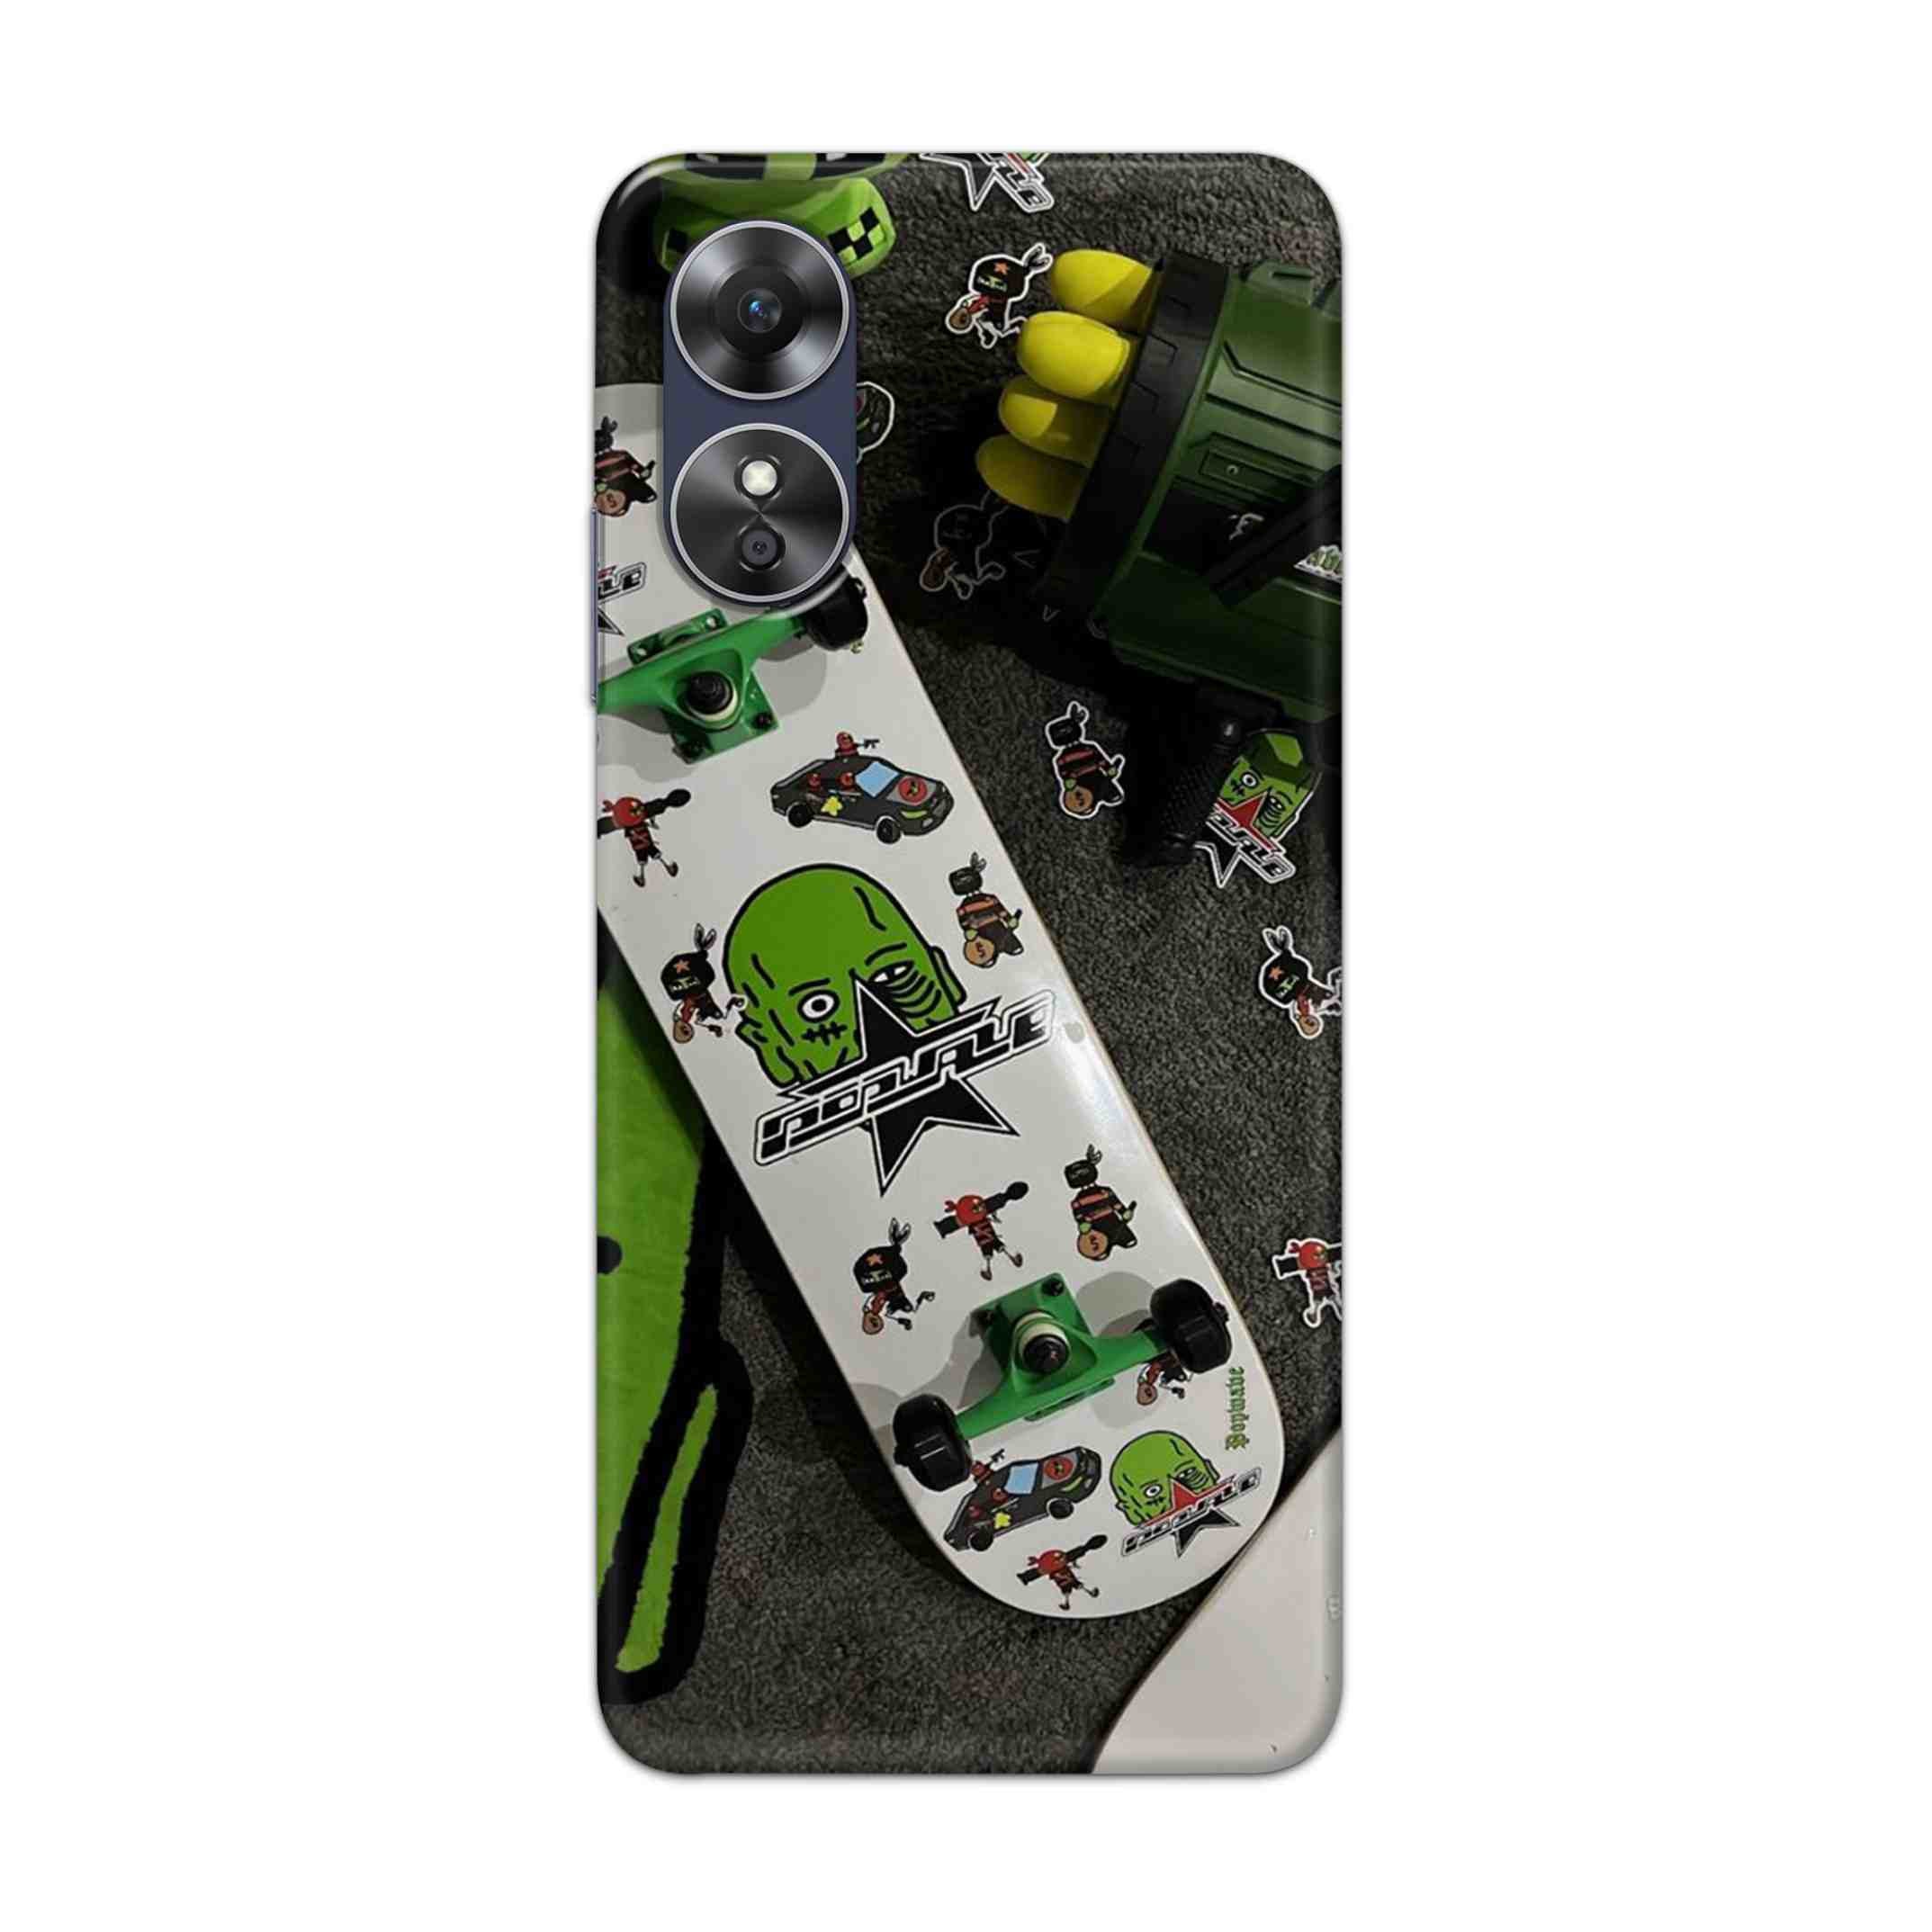 Buy Hulk Skateboard Hard Back Mobile Phone Case Cover For Oppo A17 Online